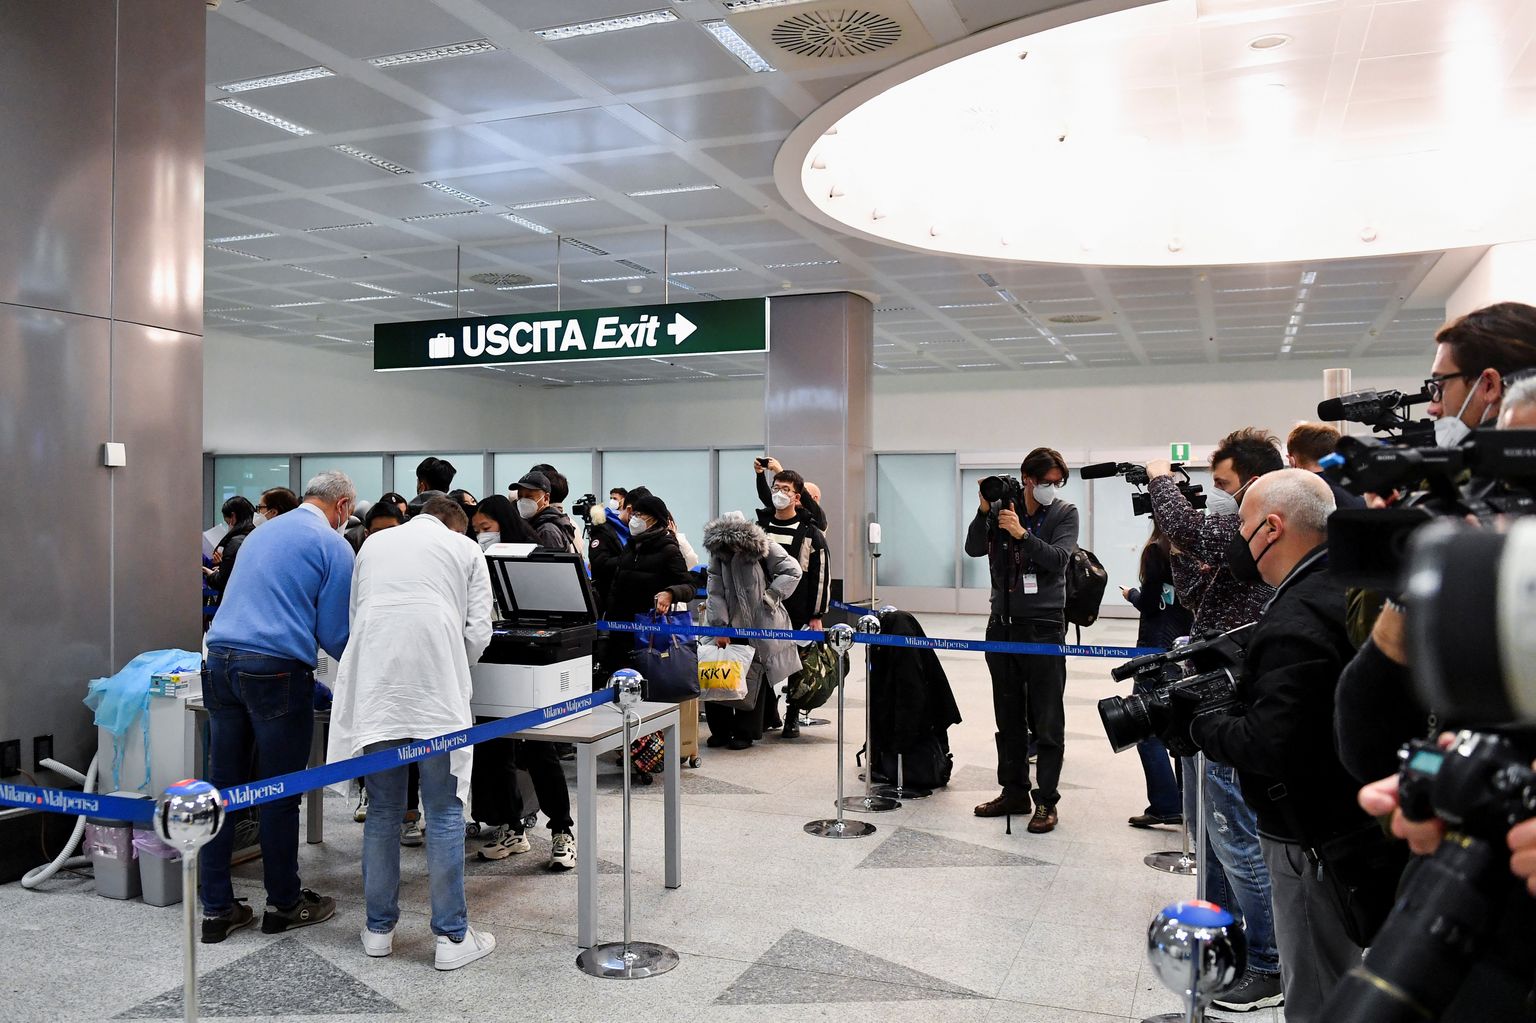 Itaalia kehtestas Hiinast tulnud lennureisijatele kohustusliku COVID-19 kontrolli. Foto on tehtud Malpensa lennujaamas Milanos 29. detsembril.